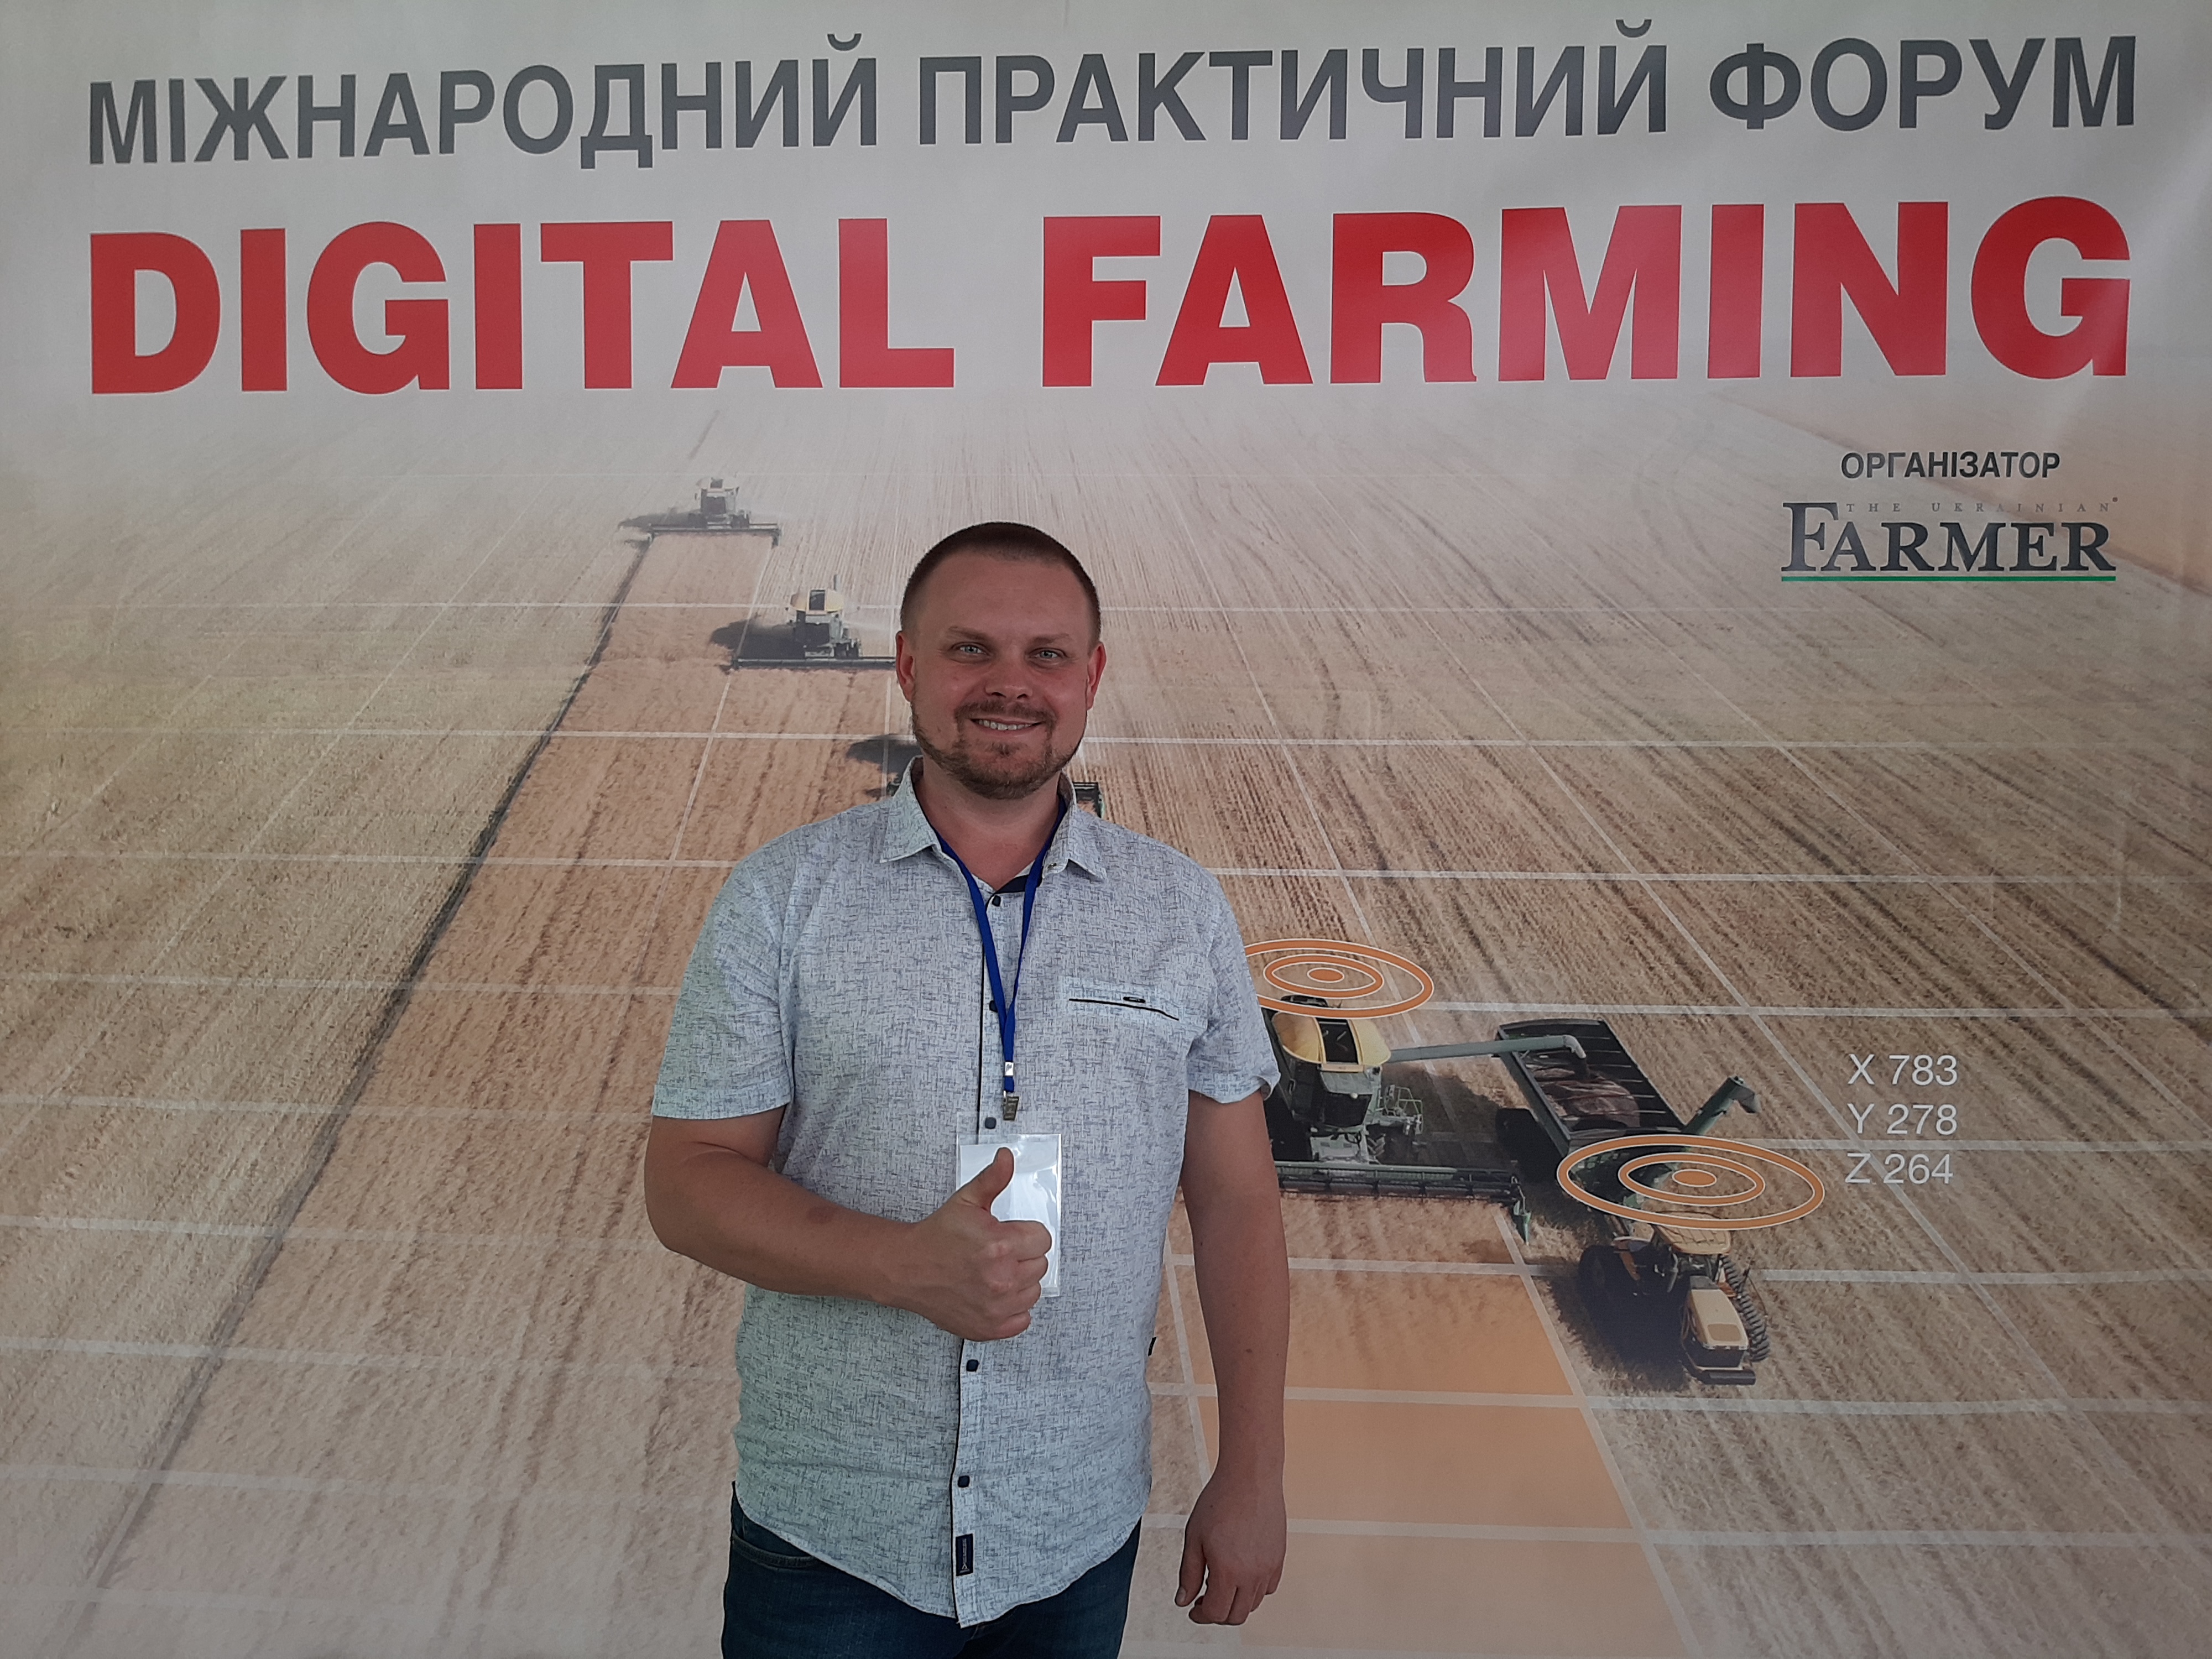 Seeding and yield maps on Digital Farming